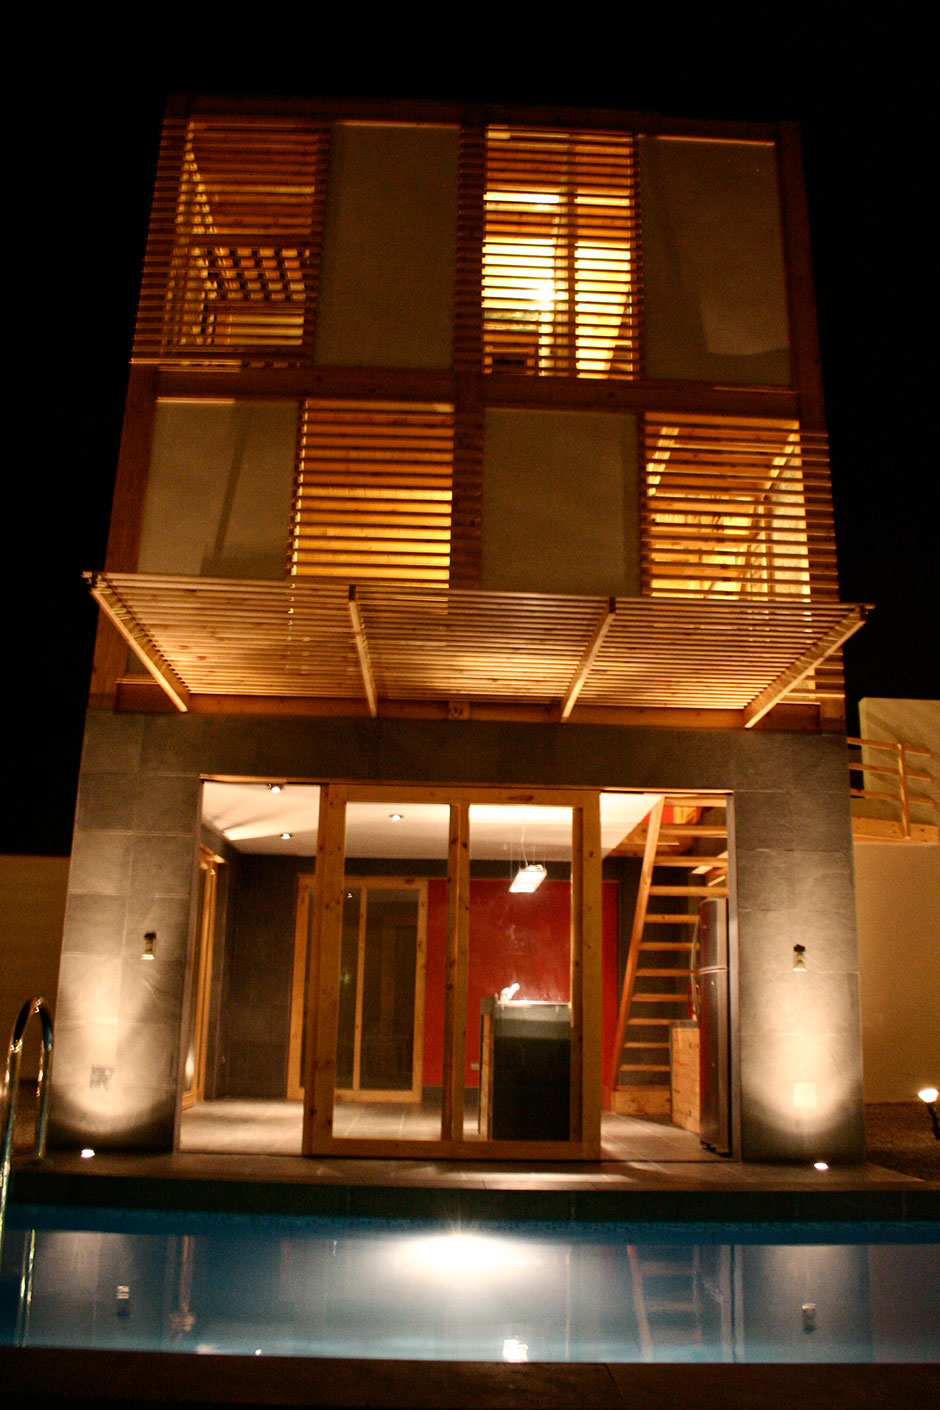 La imagen puede contener: Slide 6 Casa Pulpos, Herrera Arquitectos